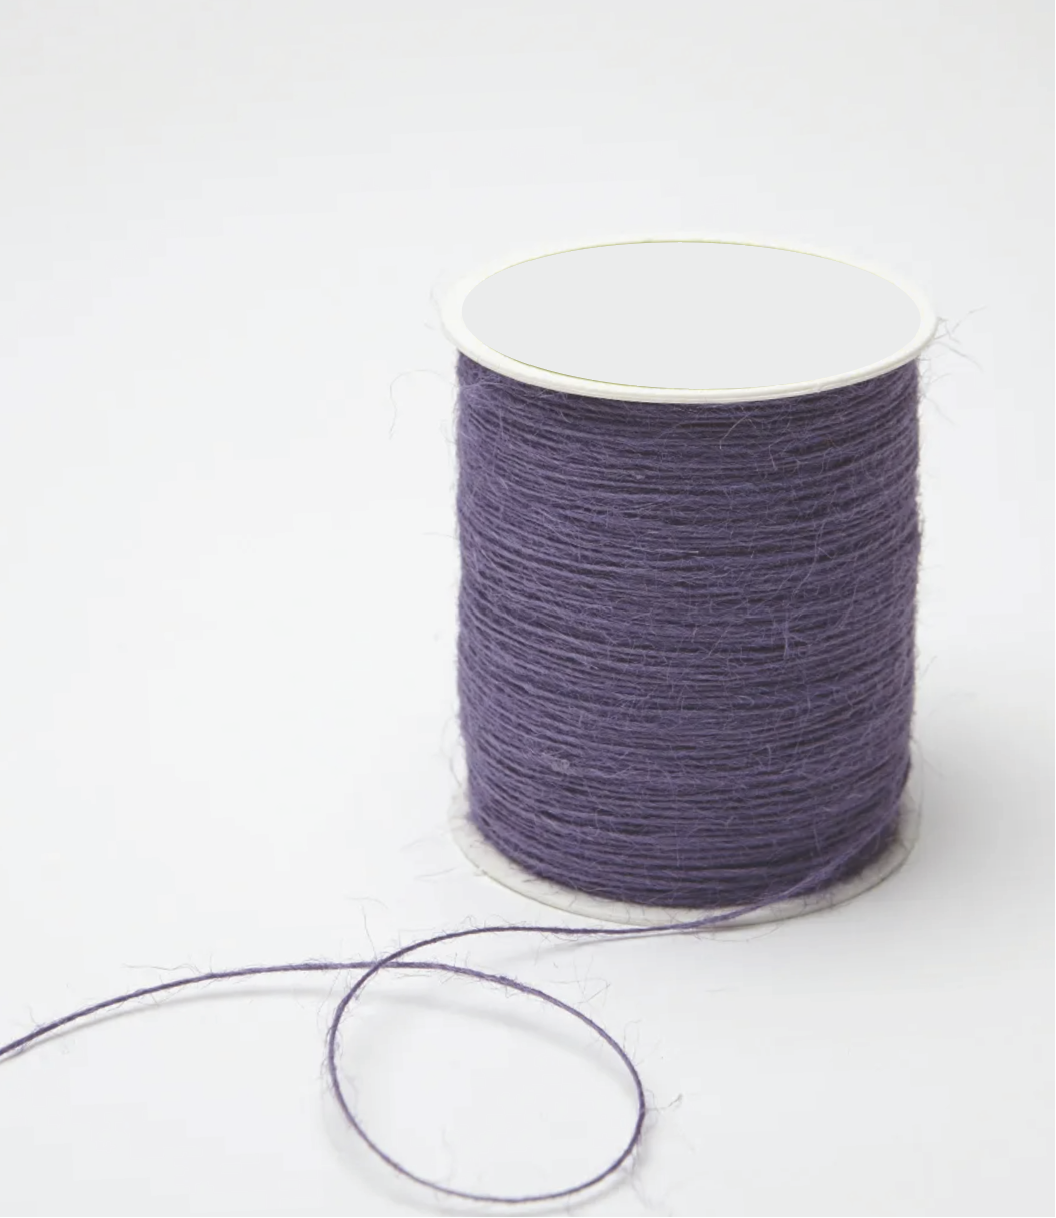 Jute / Burlap String Cord Ribbons -- 1mm x 400 yards - Various Colors